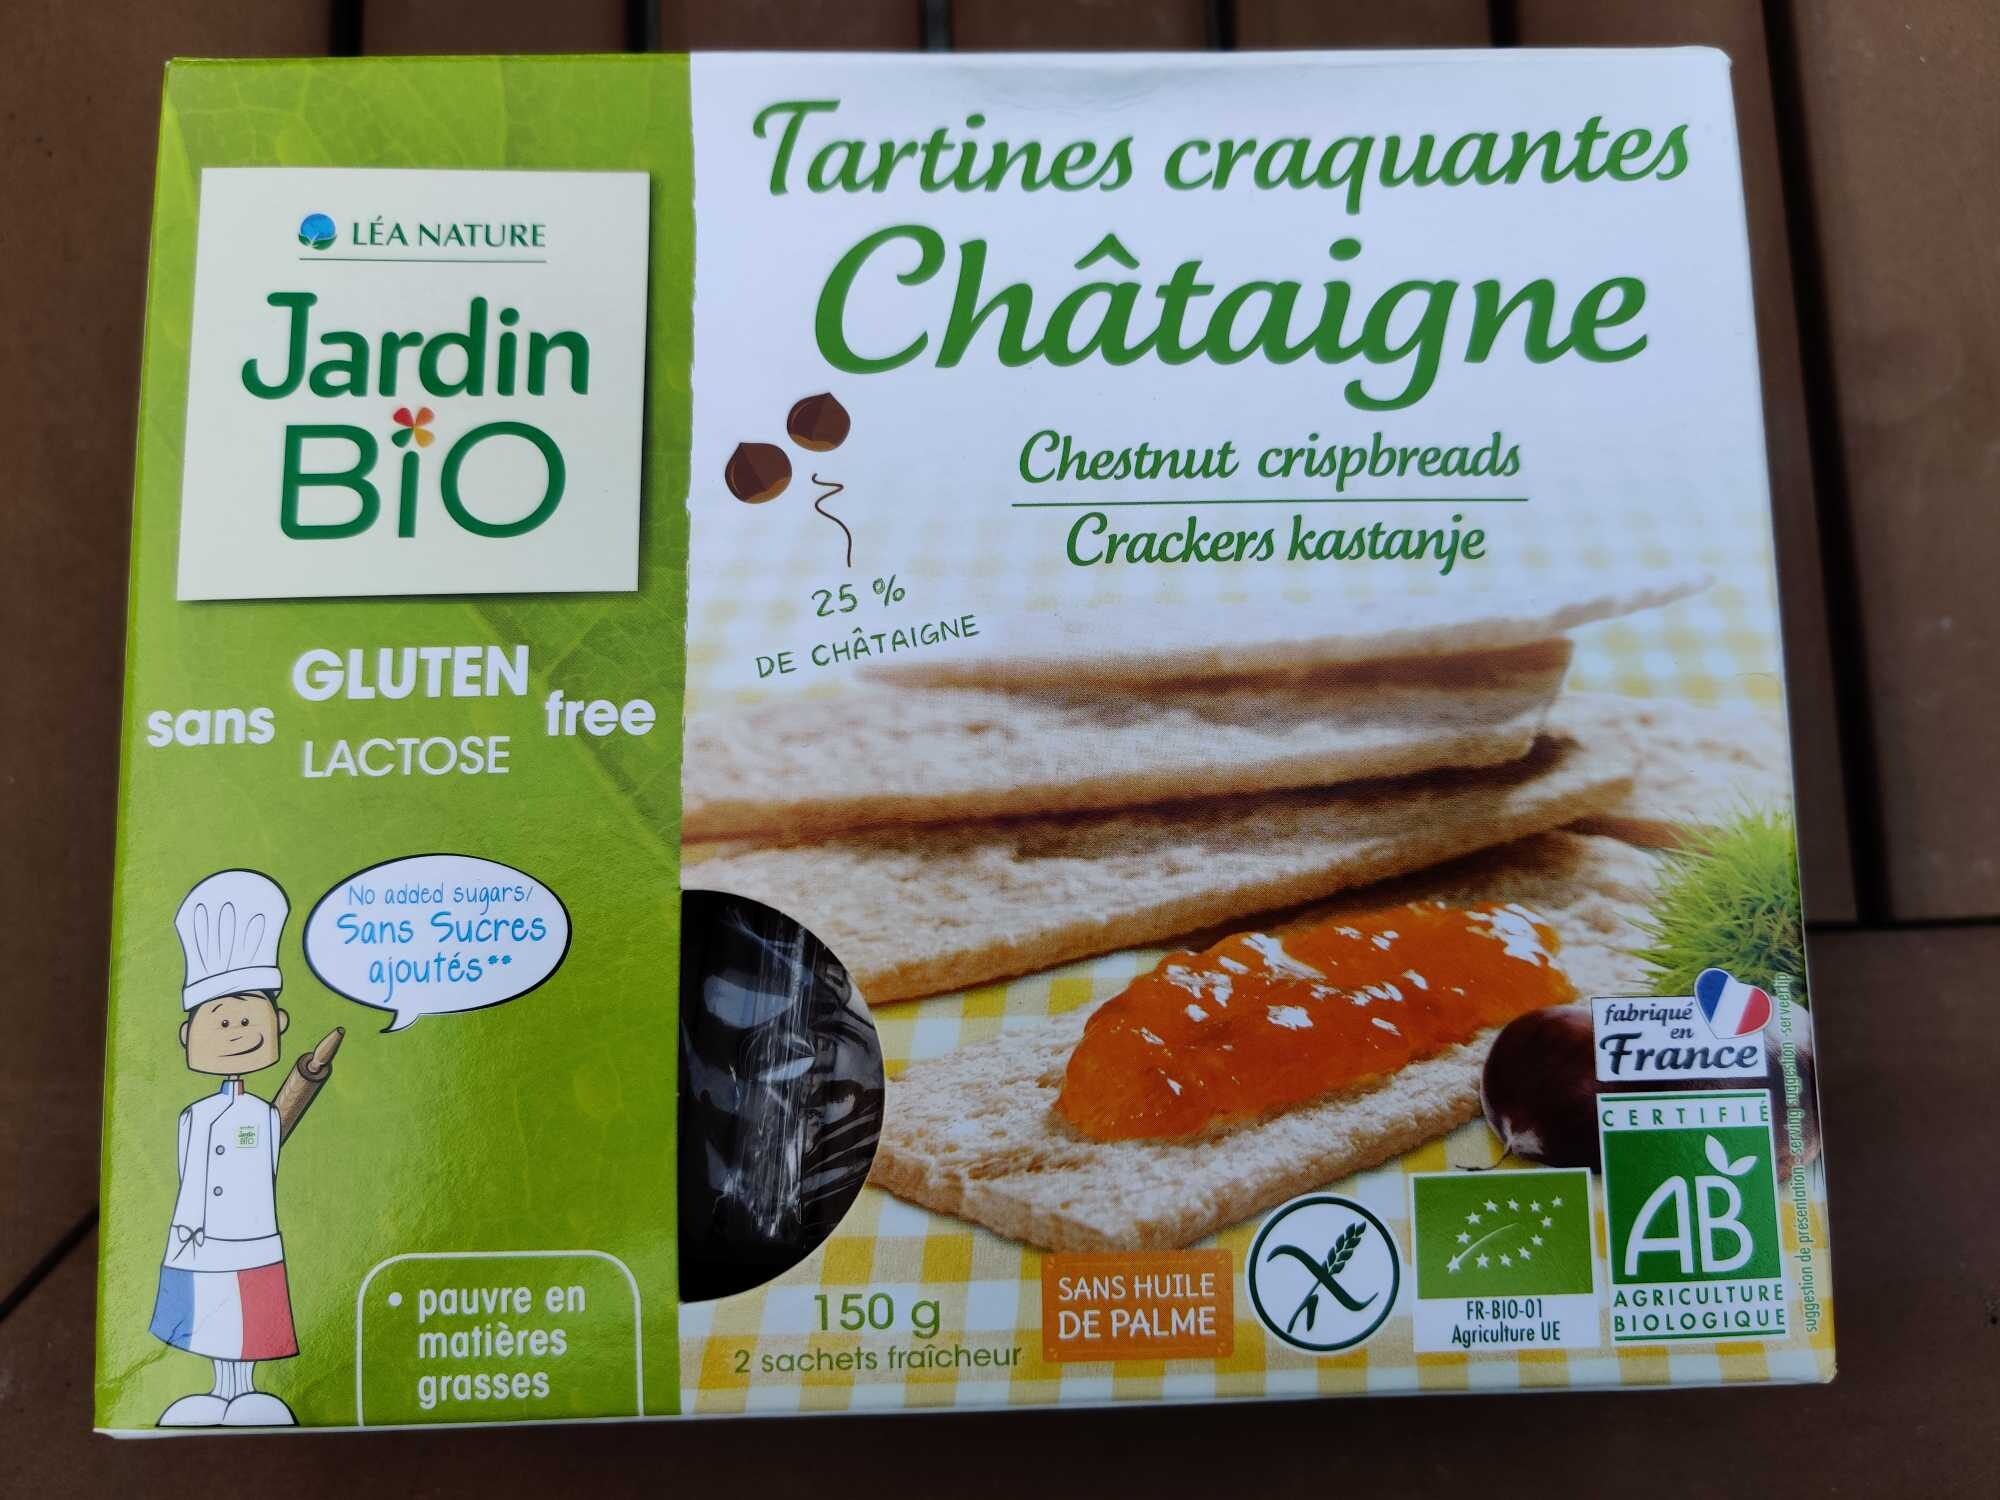 Tartines craquant es châtaigne - 製品 - fr